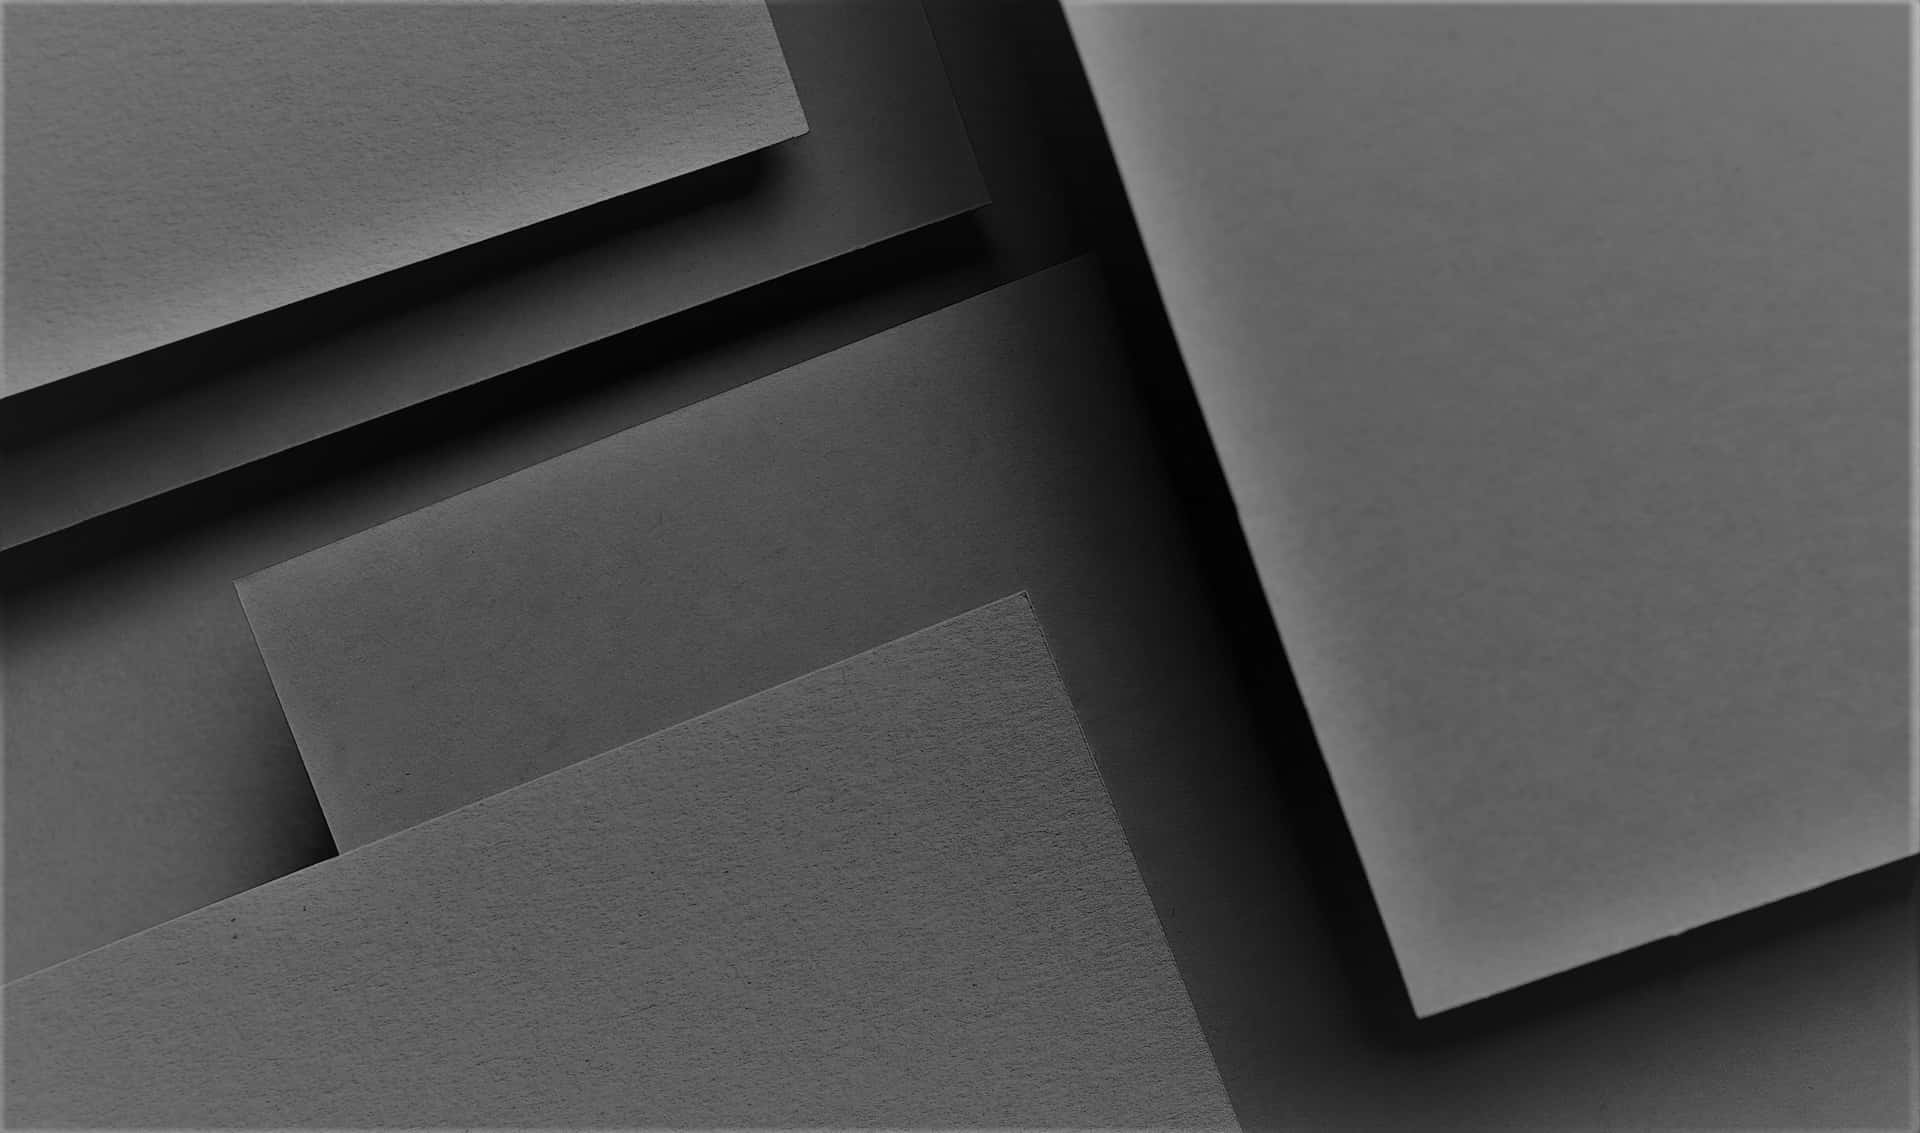 Aclose-up Of A Gray Colored Paper: Un Primer Plano De Un Papel De Color Gris.